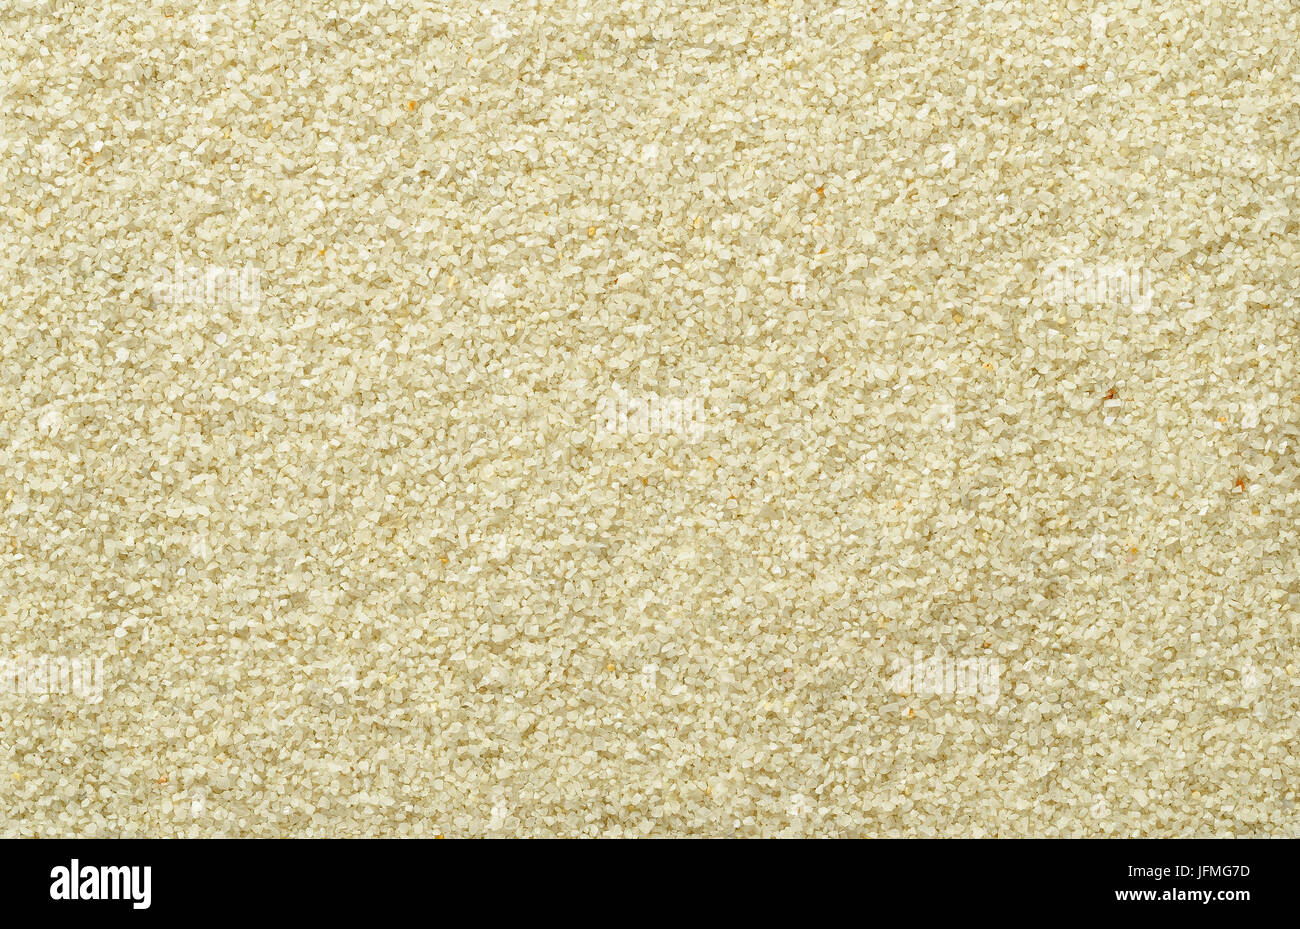 Liscio e uniforme superficie di sabbia. Marrone chiaro e color ocra dei granelli di sabbia. Gli sfondi. Closeup foto macro direttamente dall'alto. Foto Stock